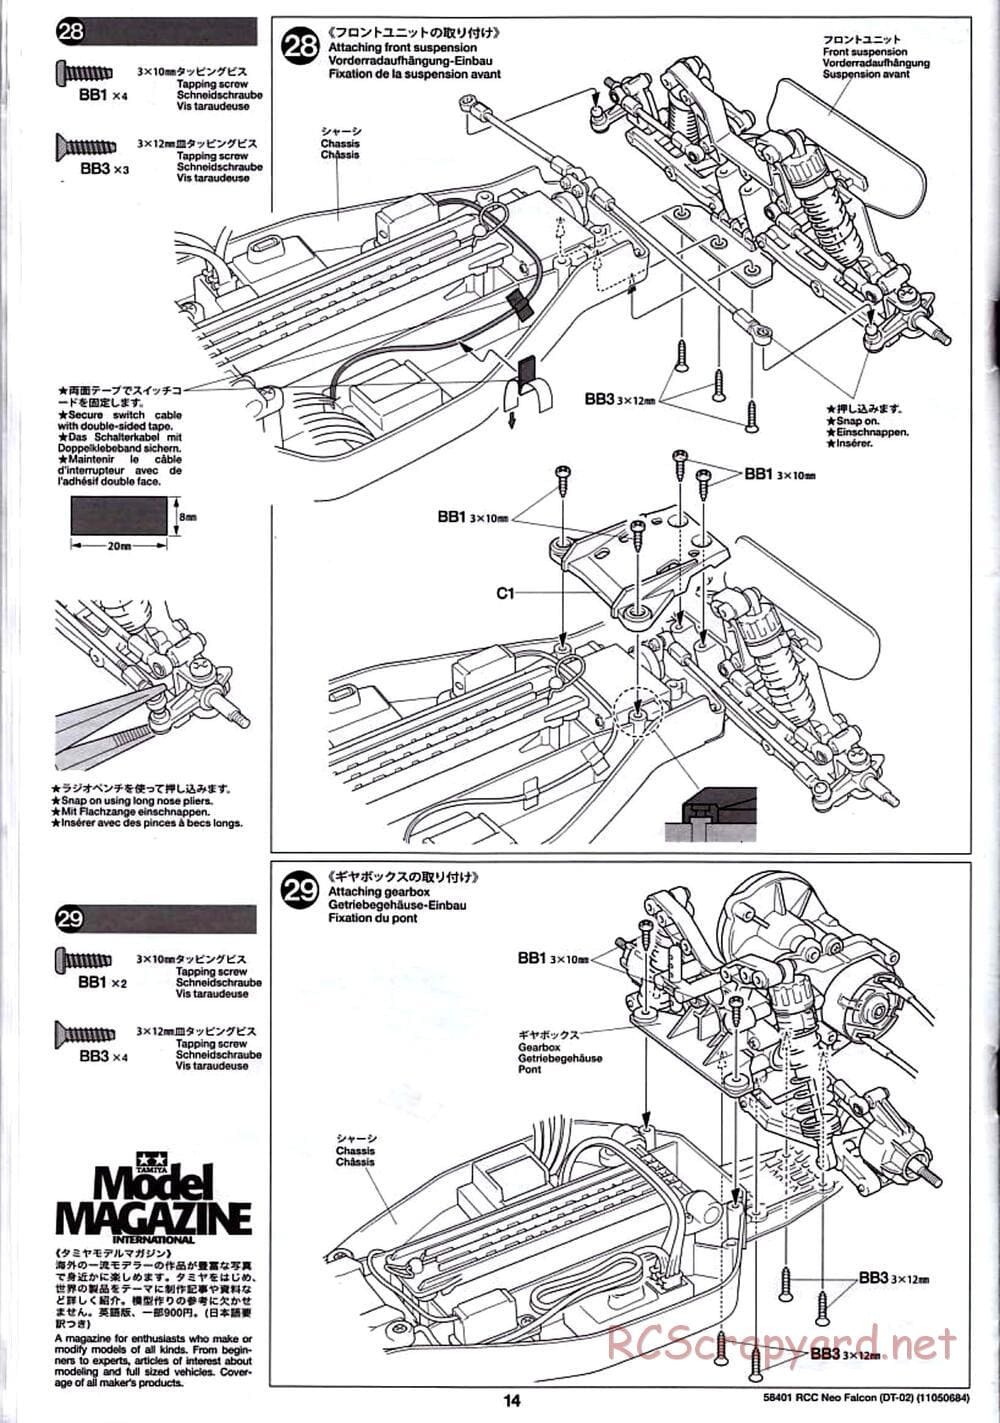 Tamiya - Neo Falcon Chassis - Manual - Page 14